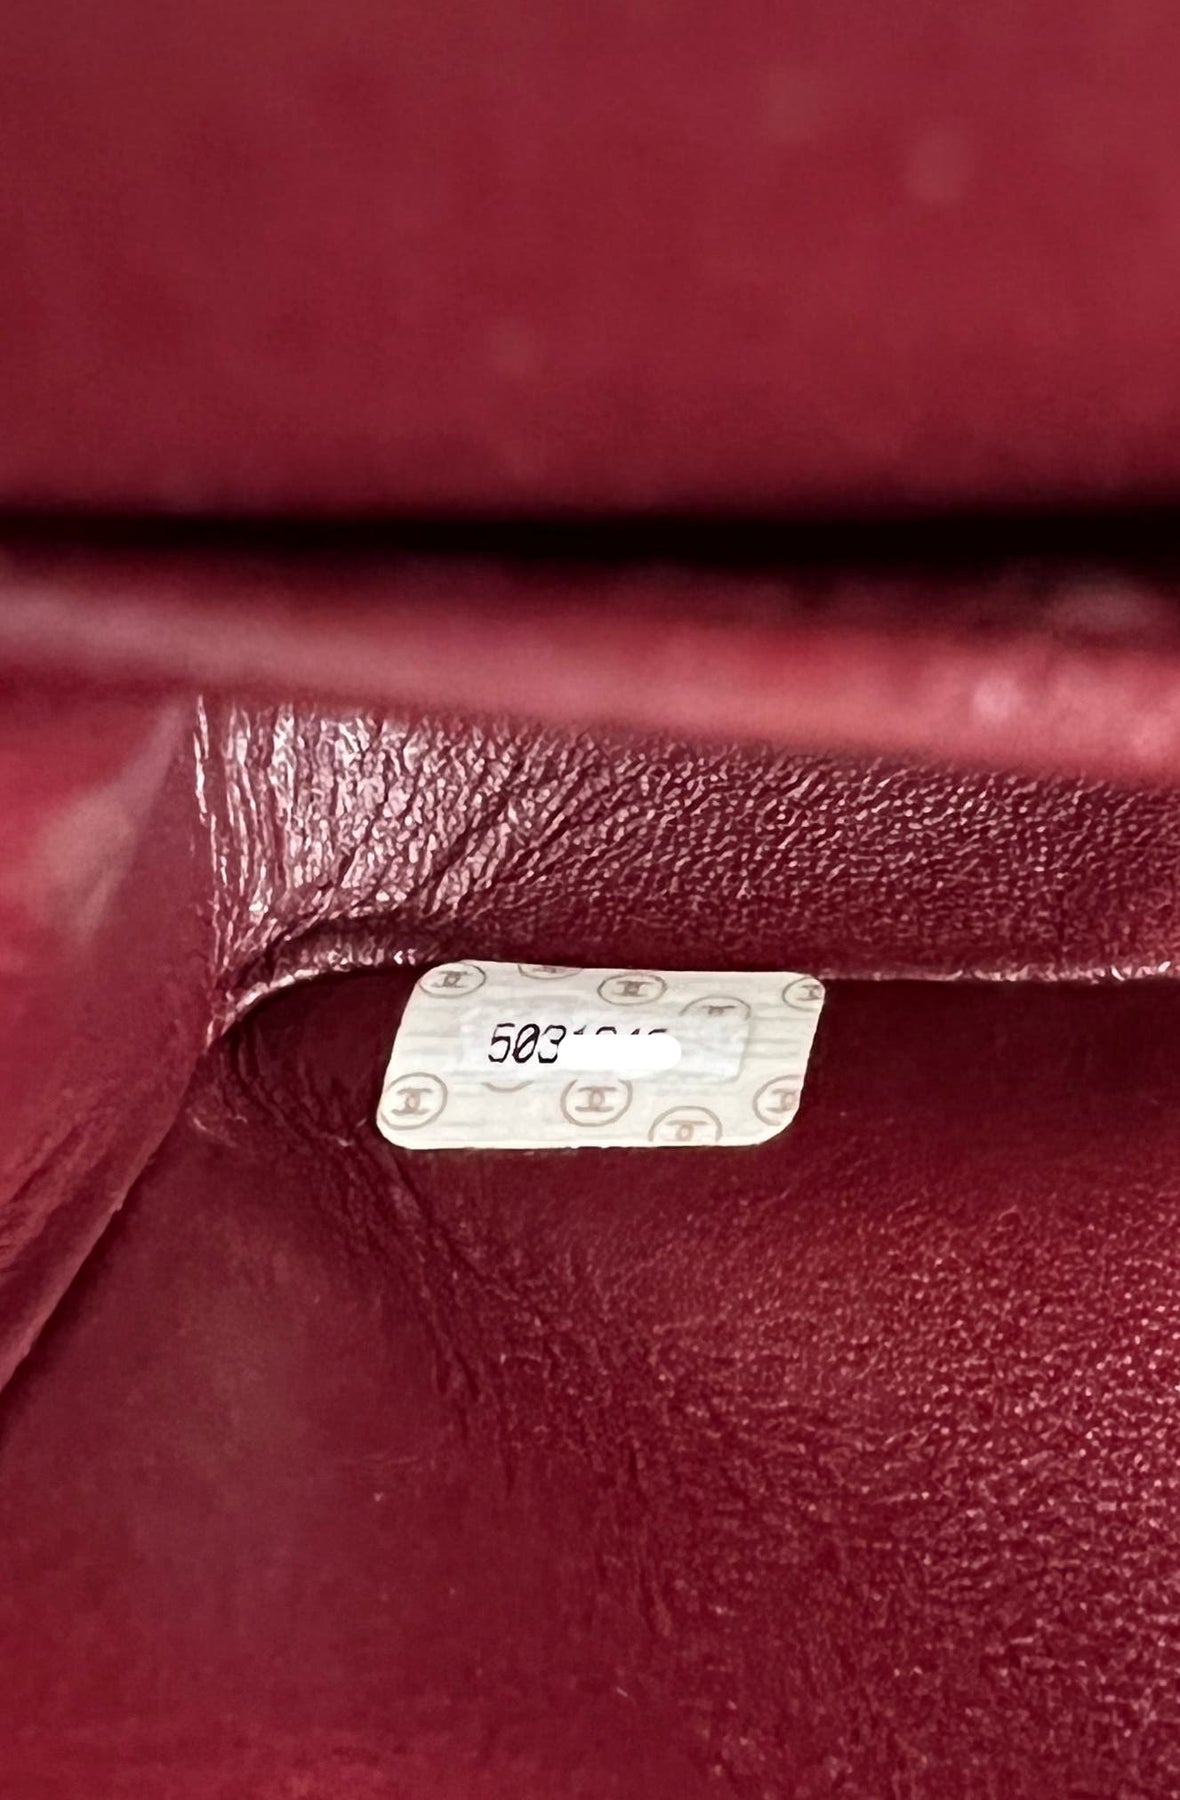 Chanel Classic Double Flap Bag Medium Lambskin Leather (Limited Editio –  l'Étoile de Saint Honoré